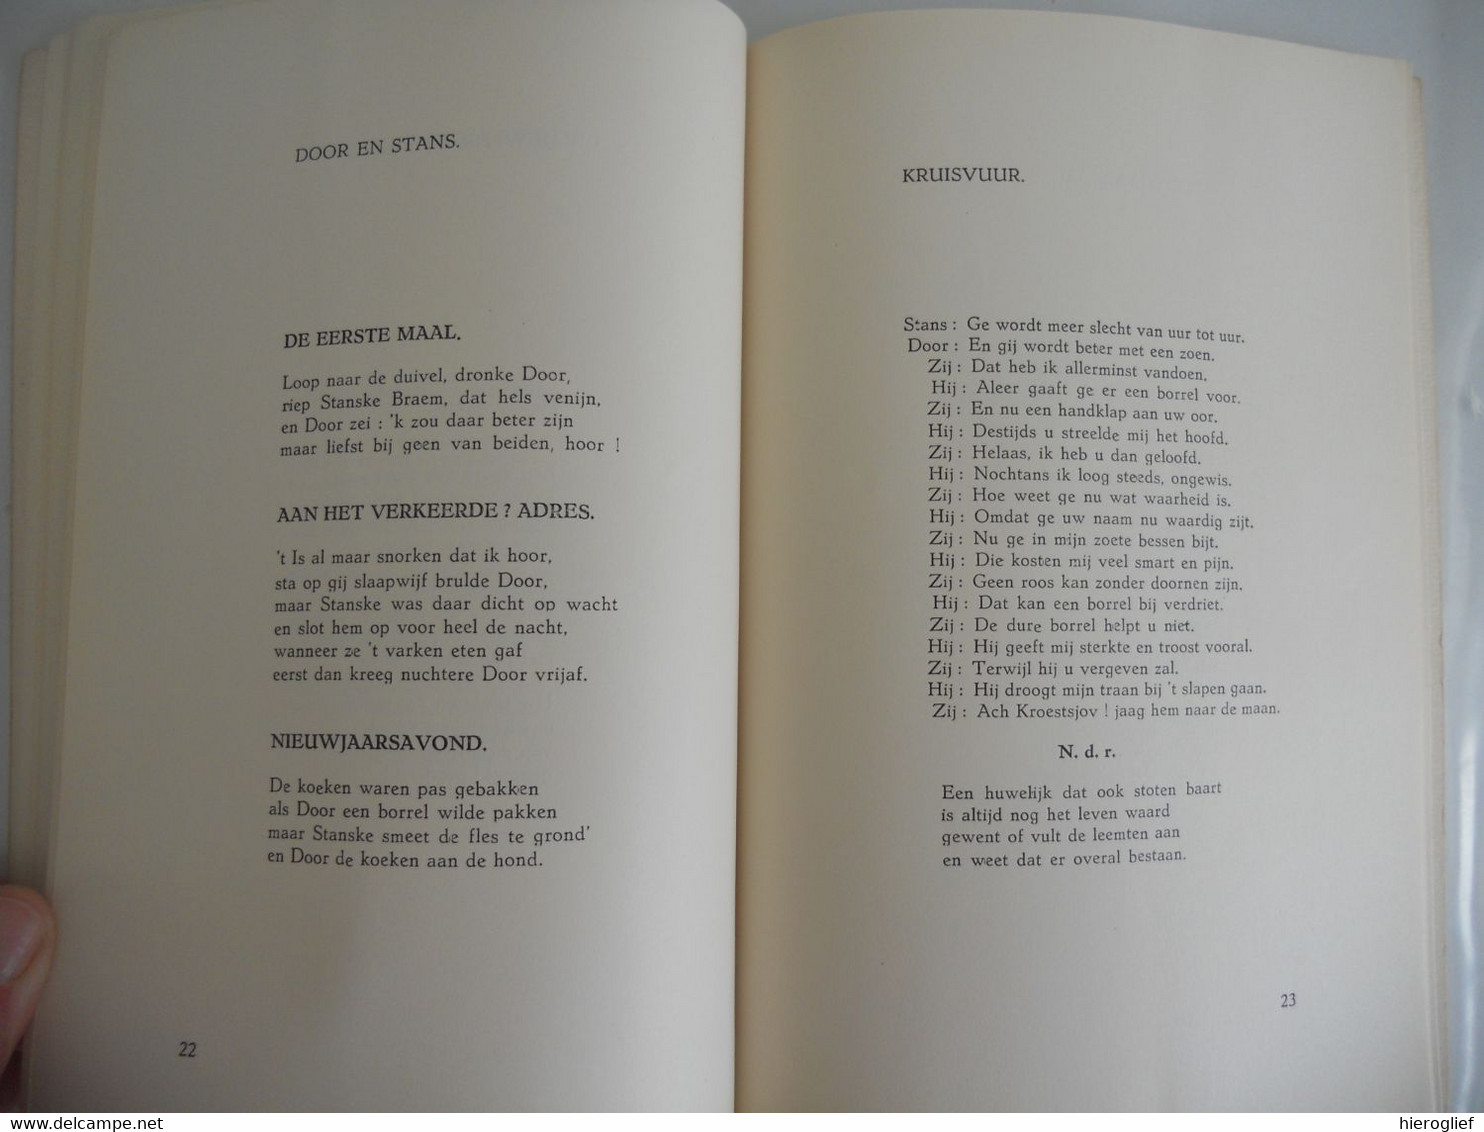 HET NAAKTE LEVEN - Verzen Door MAURICE NEYRINCK 1958 Poëzie Gedicht Dichter - Poesía